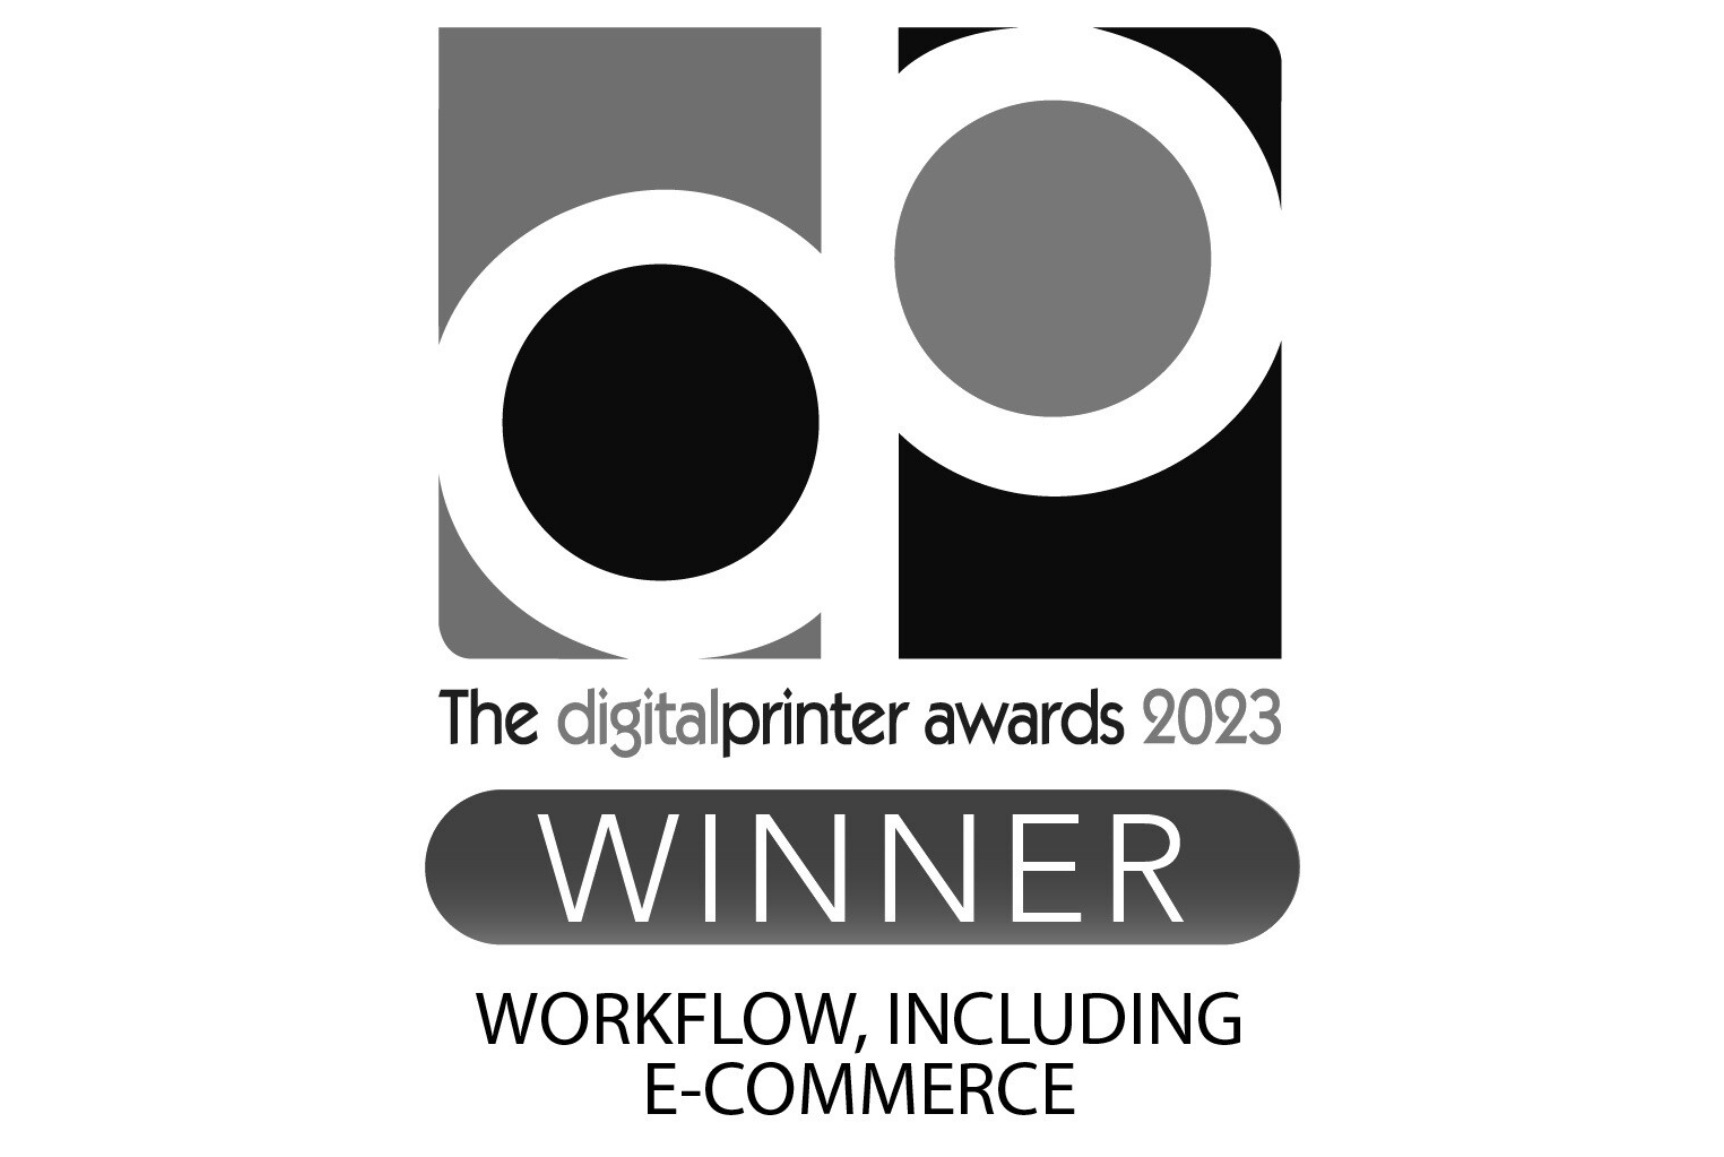 digital-printer-awards-2023-winner-workflow-including-e-commerce-bw